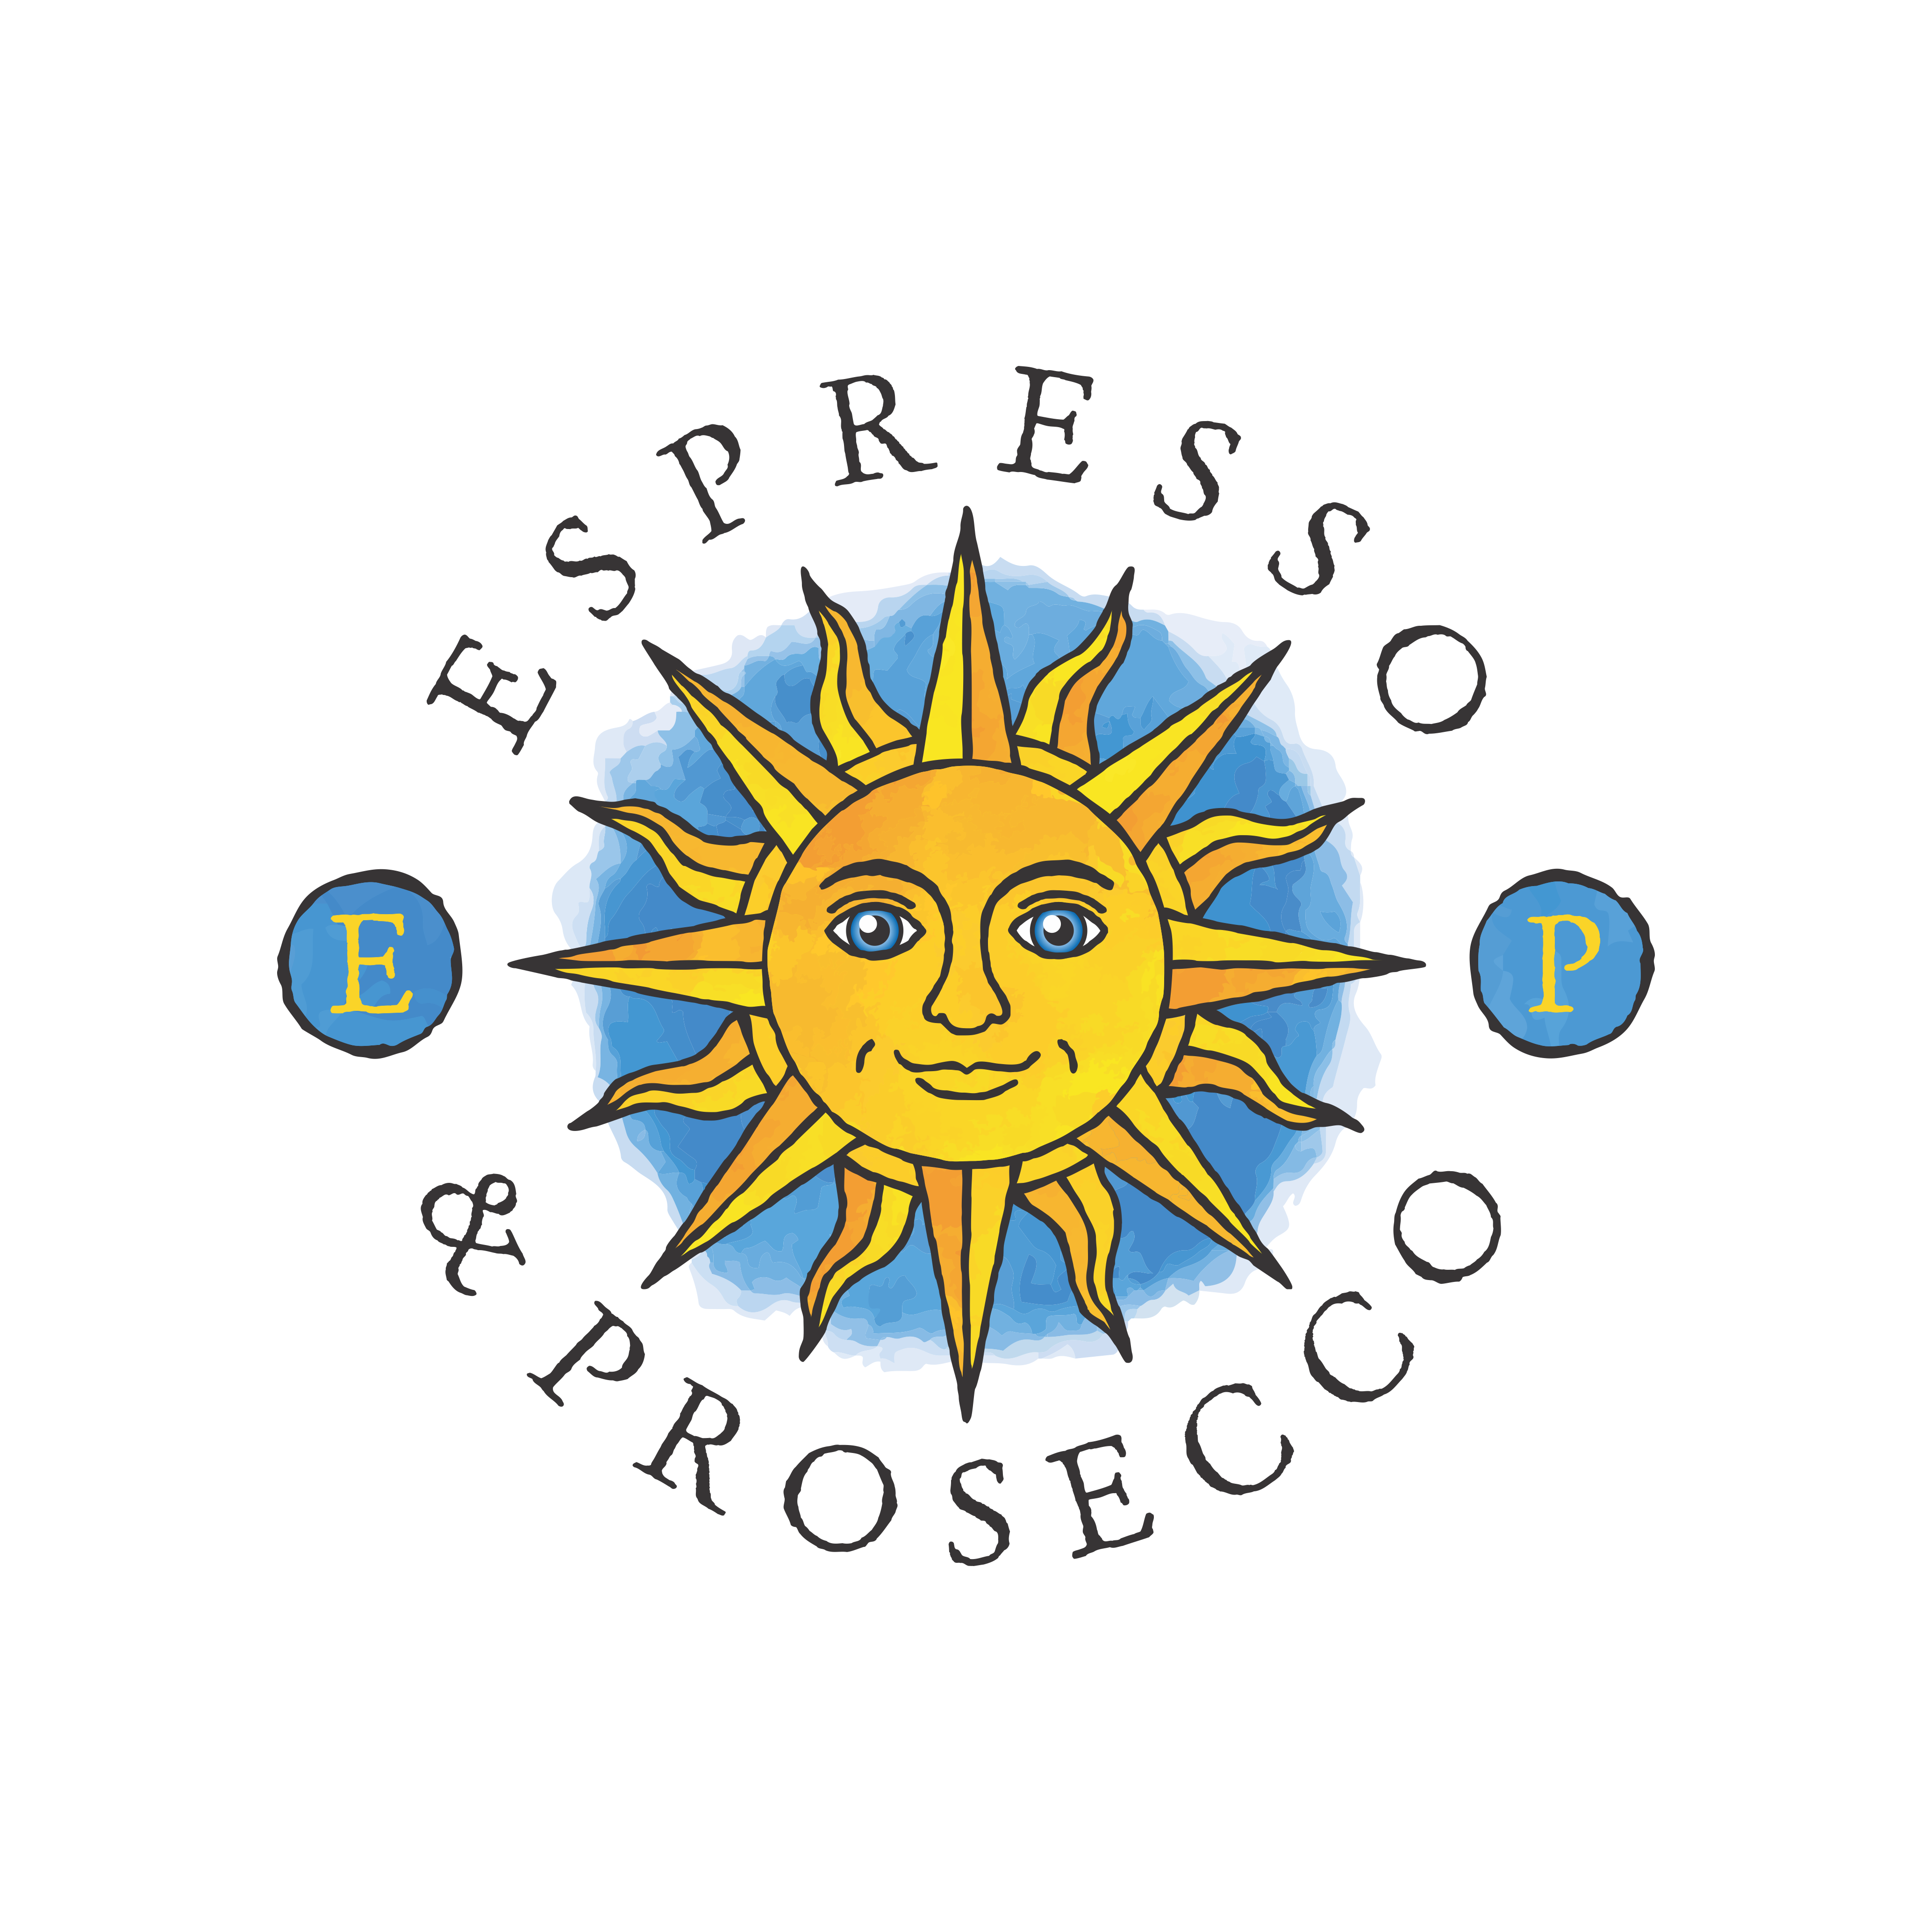 Espresso & Prosecco